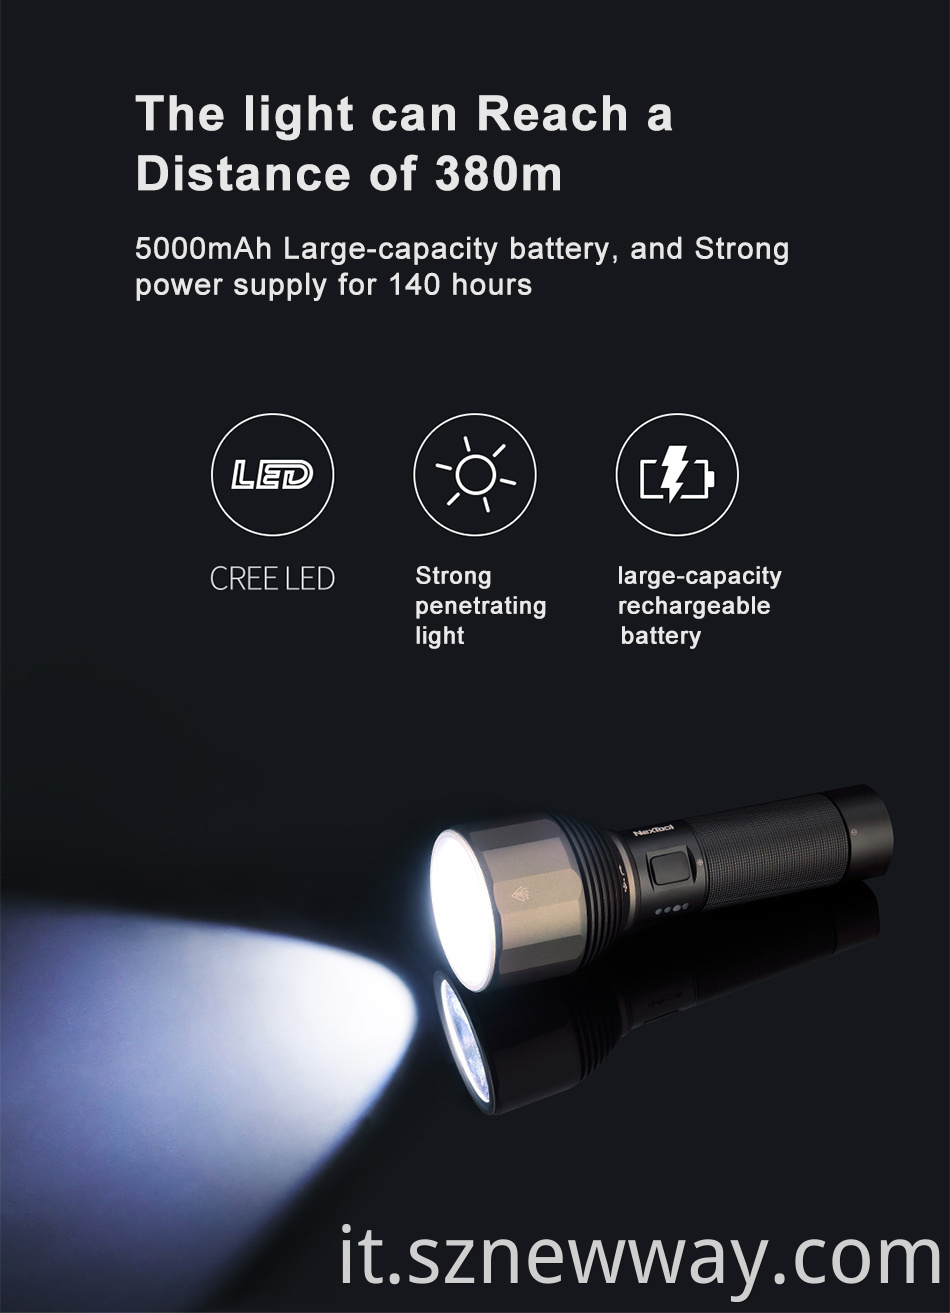 Nextool Led Rechargeable Flashlight